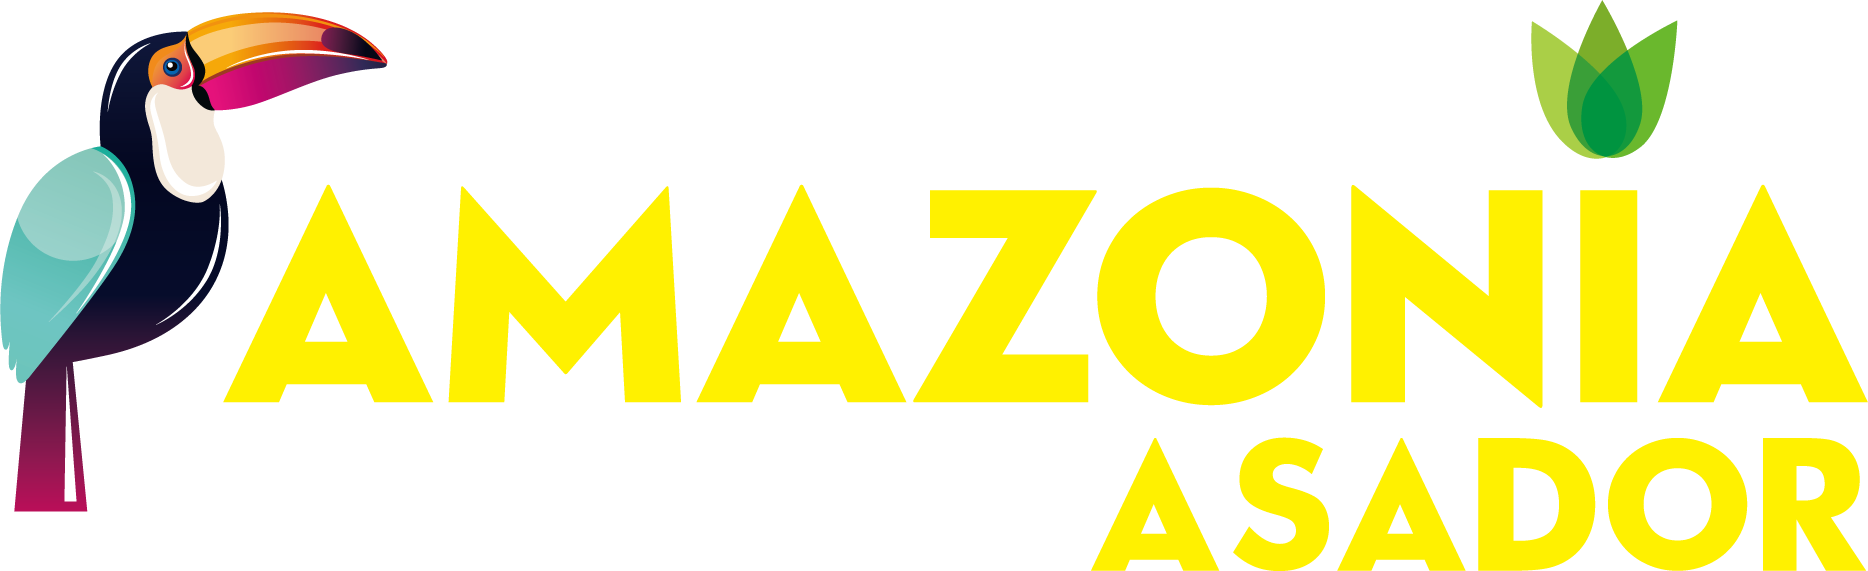 Amazonia Asador